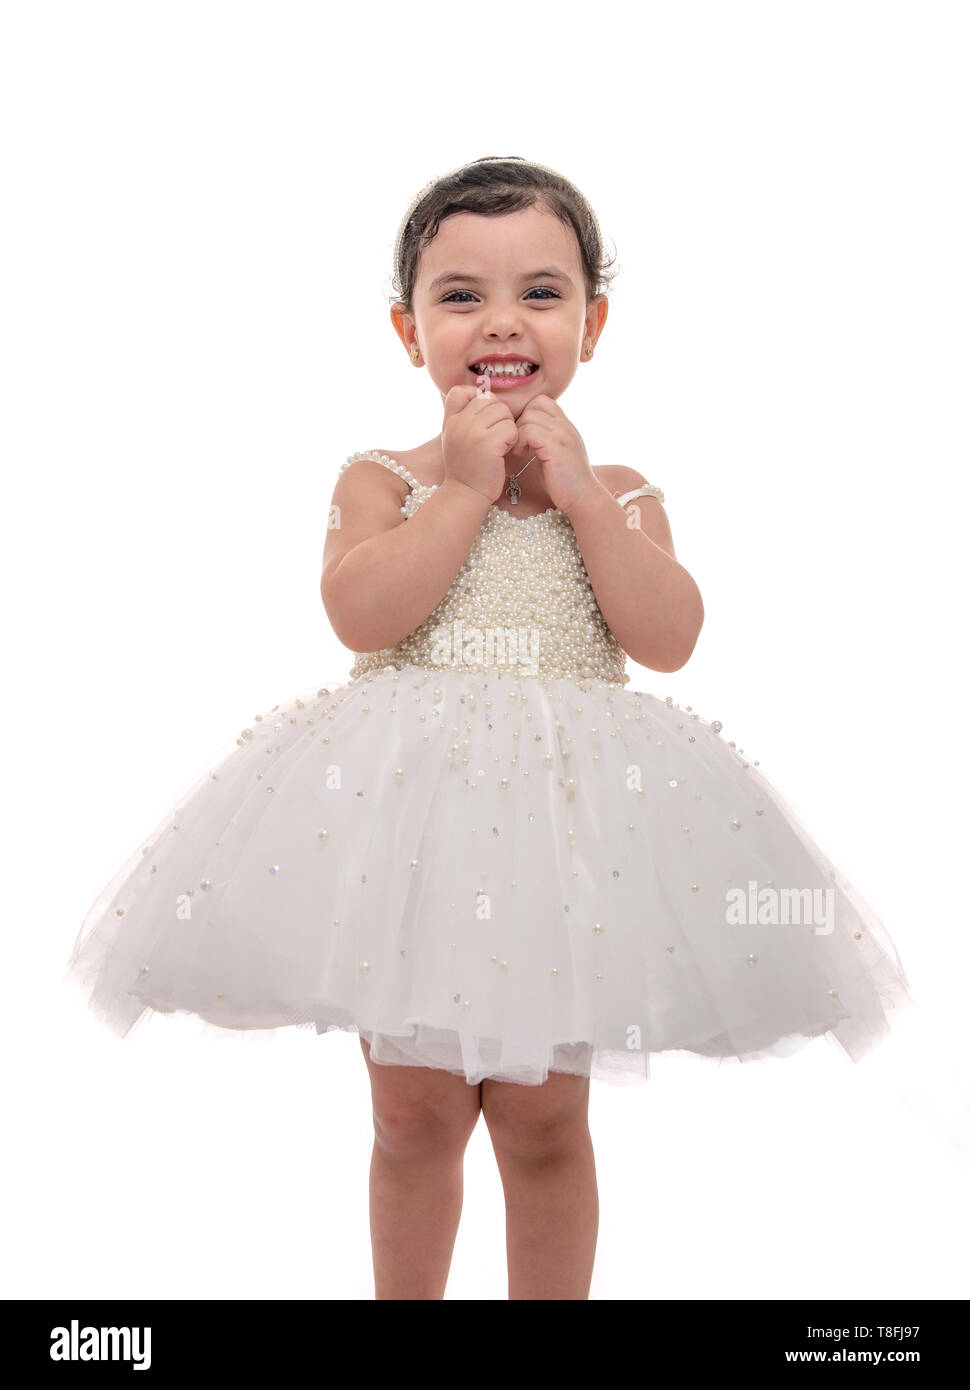 Hermoso Niño en blanco vestido de novia, Niña con la felicidad de expresión, Foto de estudio, aislado sobre fondo blanco. Foto de stock